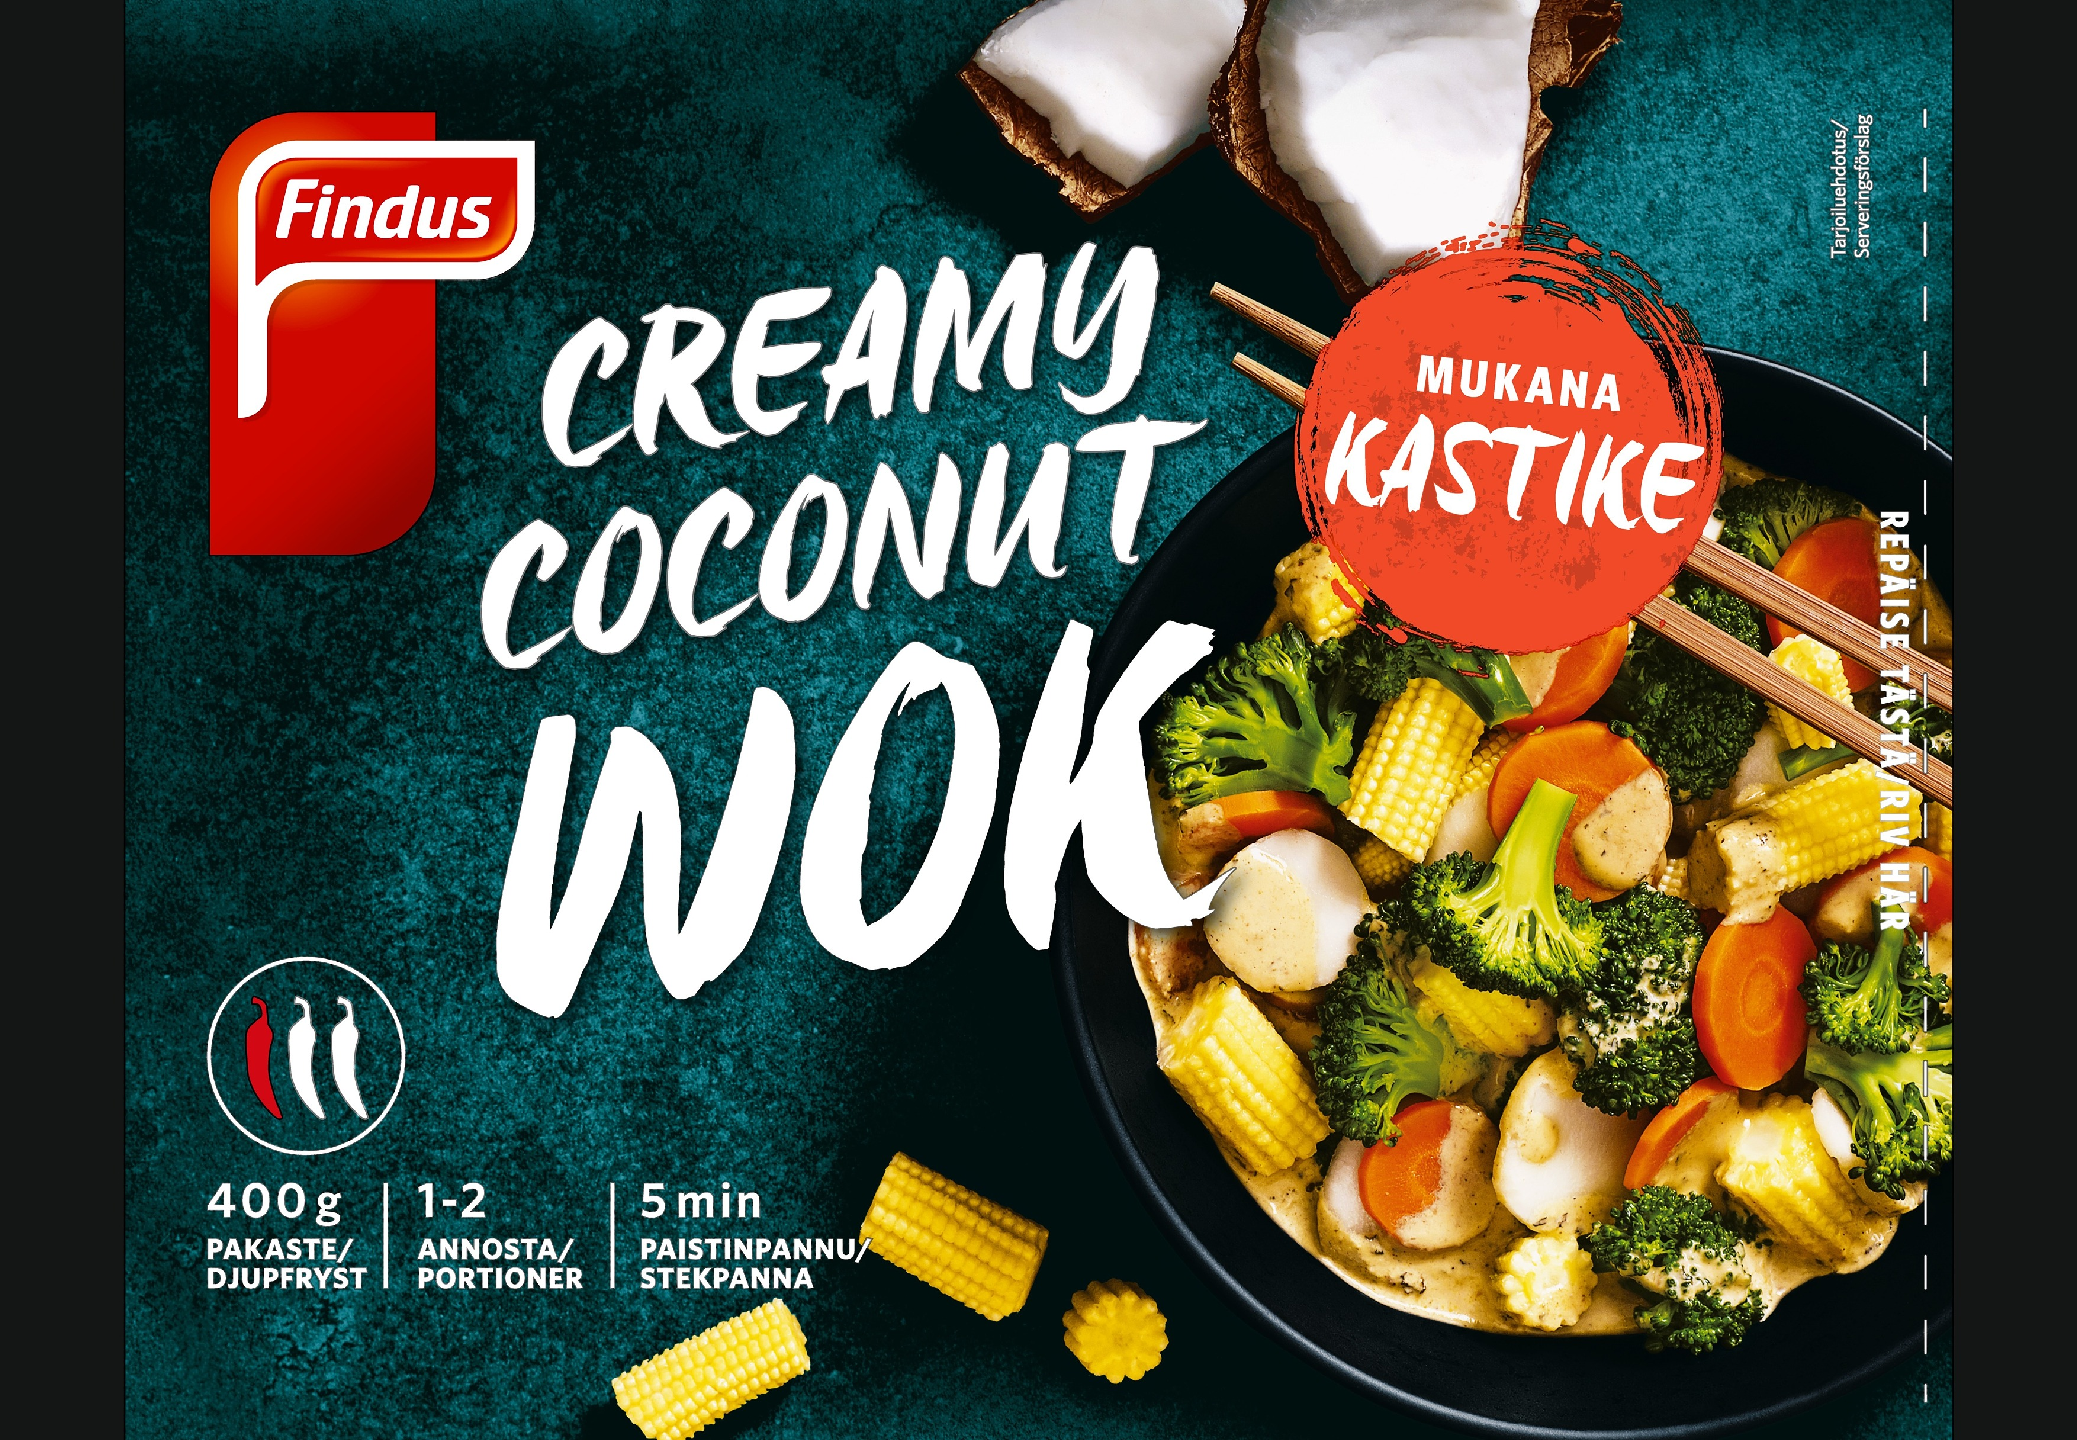 Findus Creamy Coconut Wok 400g pakaste